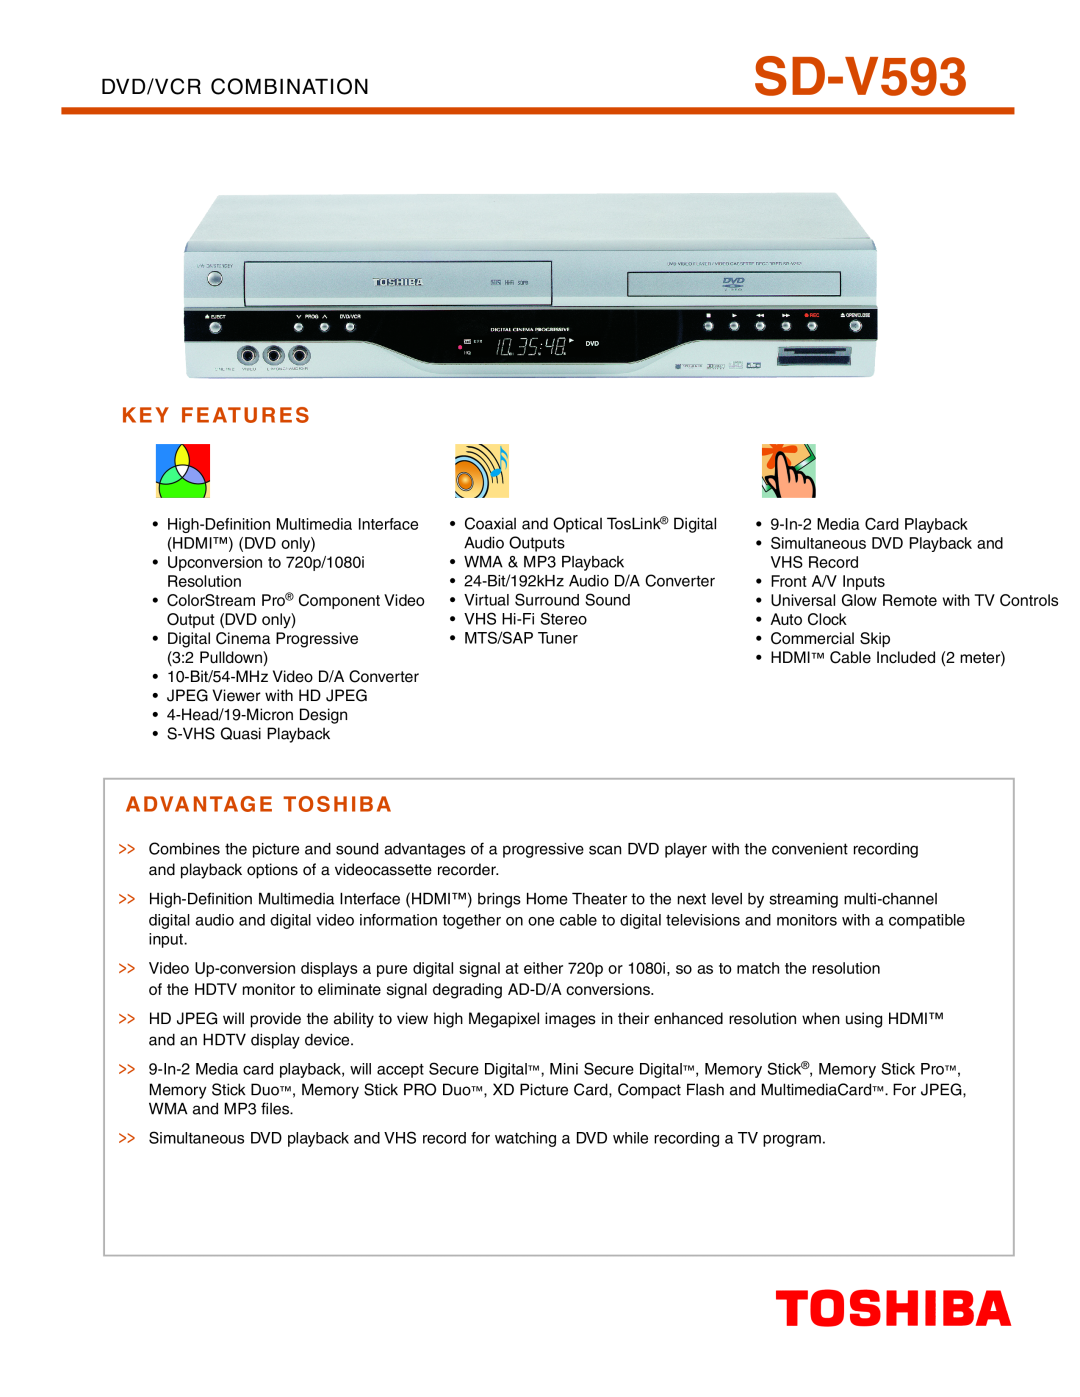 Toshiba SD-V593 manual Key Features, Advantage Toshiba, Dvd/Vcr Combination 